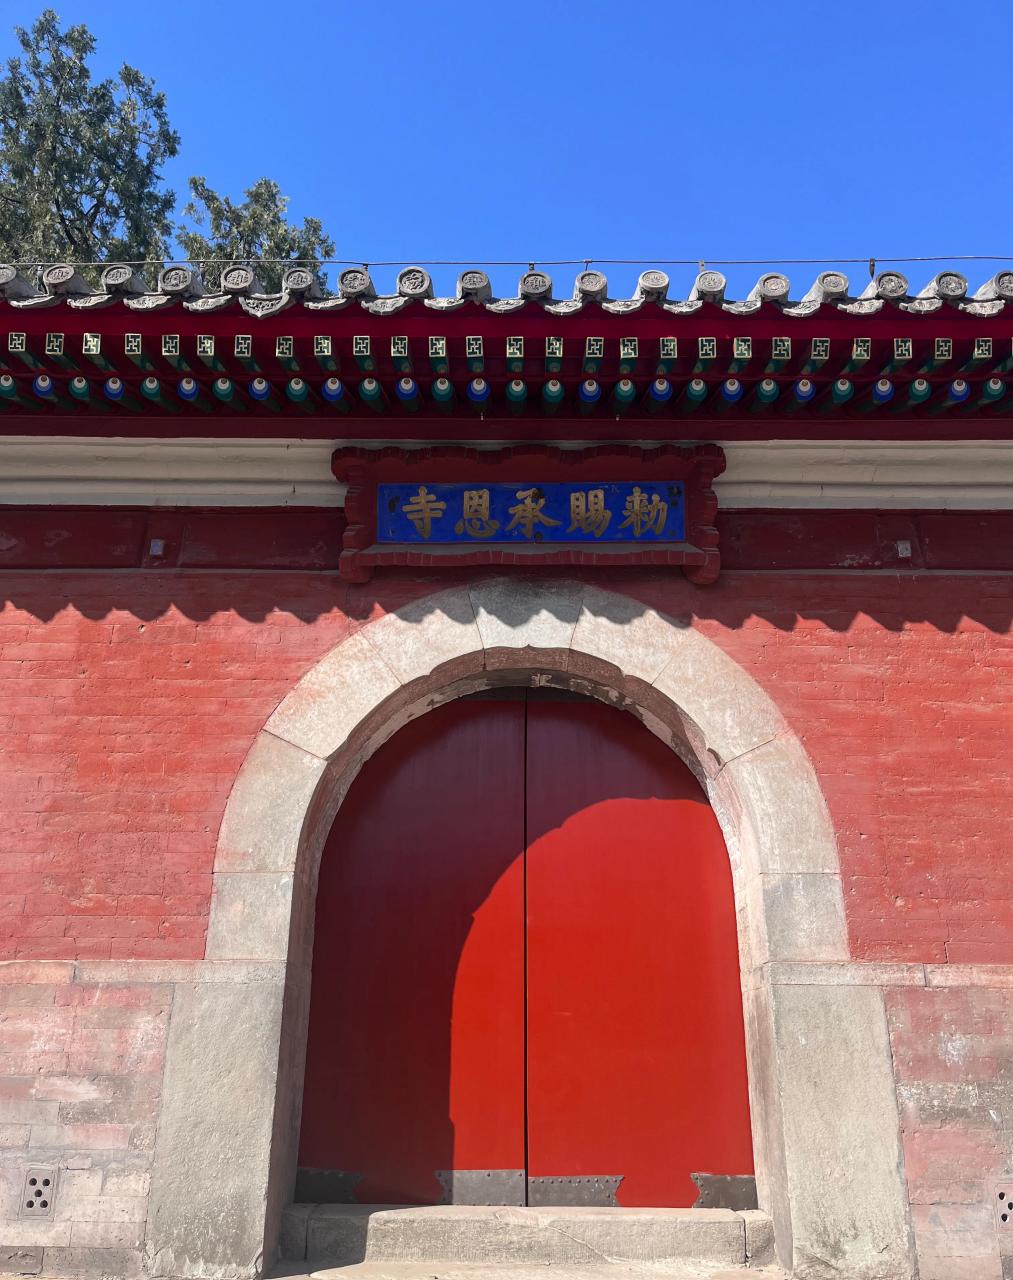 位于石景山的燕京八绝博物馆,一天只接待很少的预约参观游客,里面的